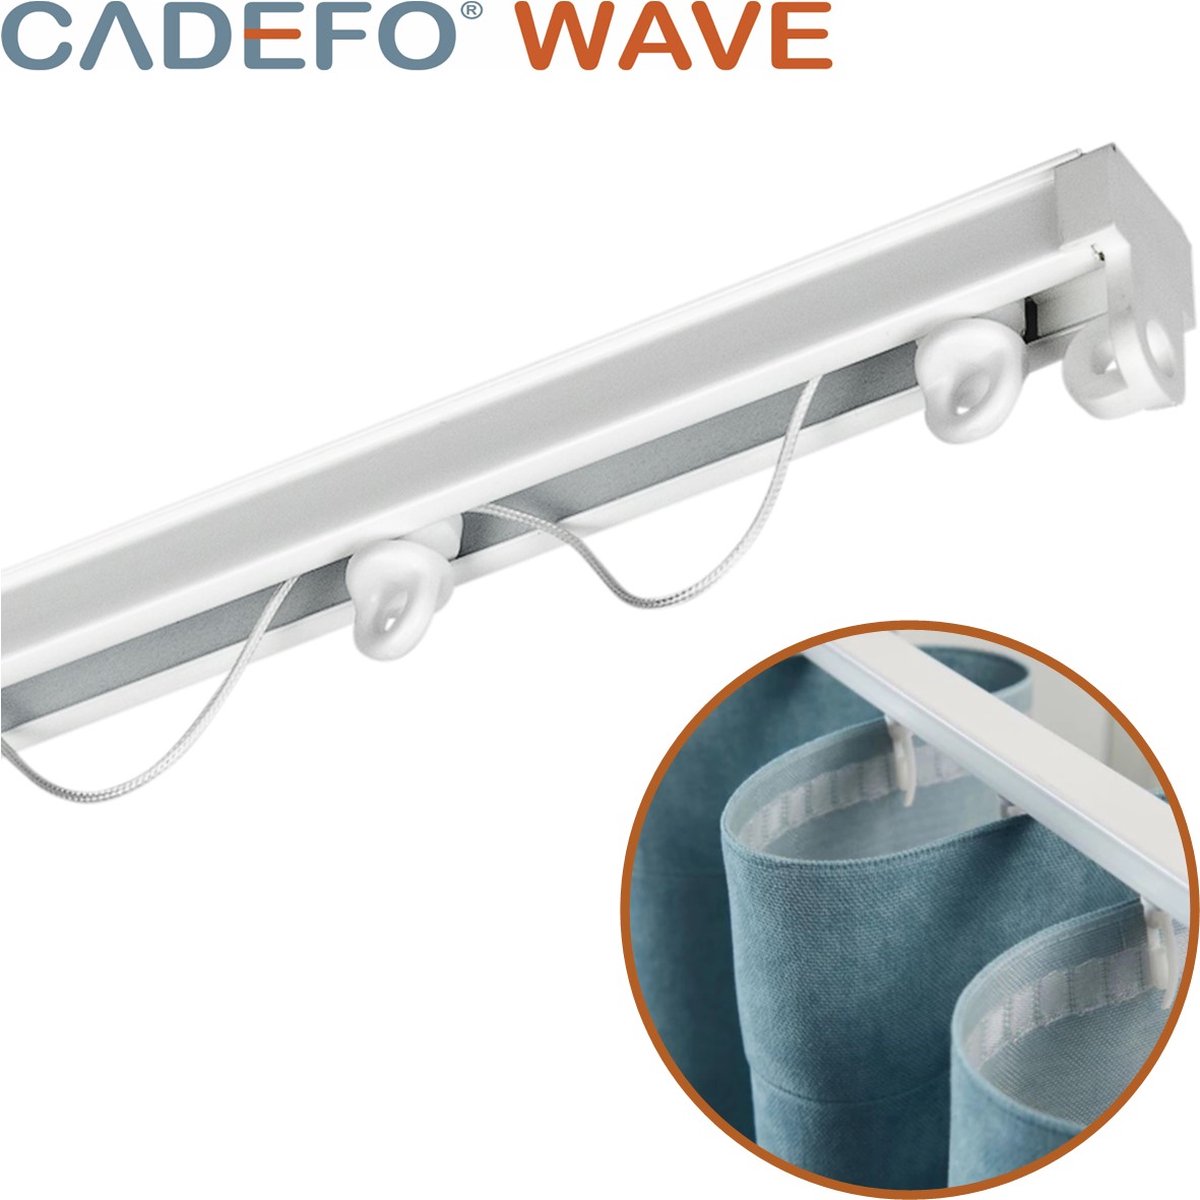 CADEFO WAVE (551 - 600 cm) Gordijnrails - Compleet op maat! - UIT 1 STUK - Leverbaar tot 6 meter - Plafondbevestiging - Lengte 590 cm